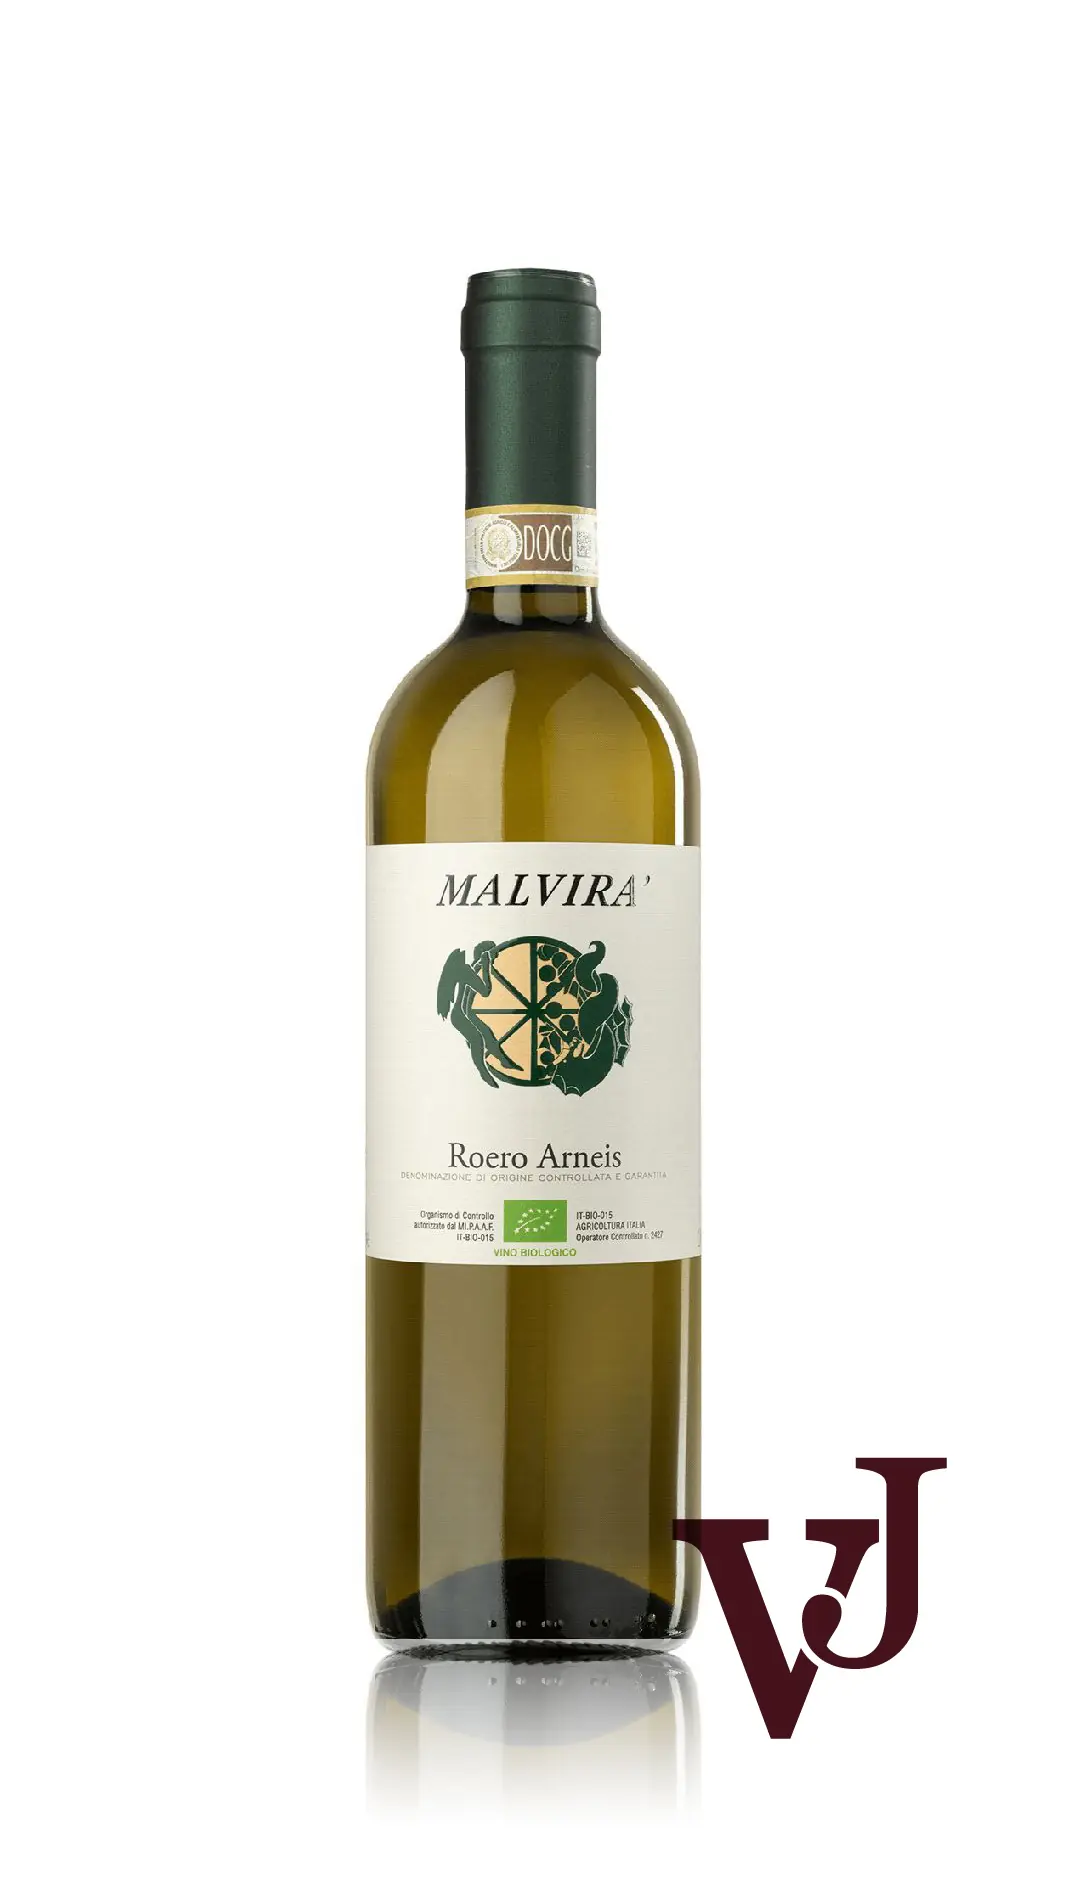 Vitt Vin - Malvirà Roero Arneis 2021 artikel nummer 5979101 från producenten Malvirà från området Italien - Vinjournalen.se